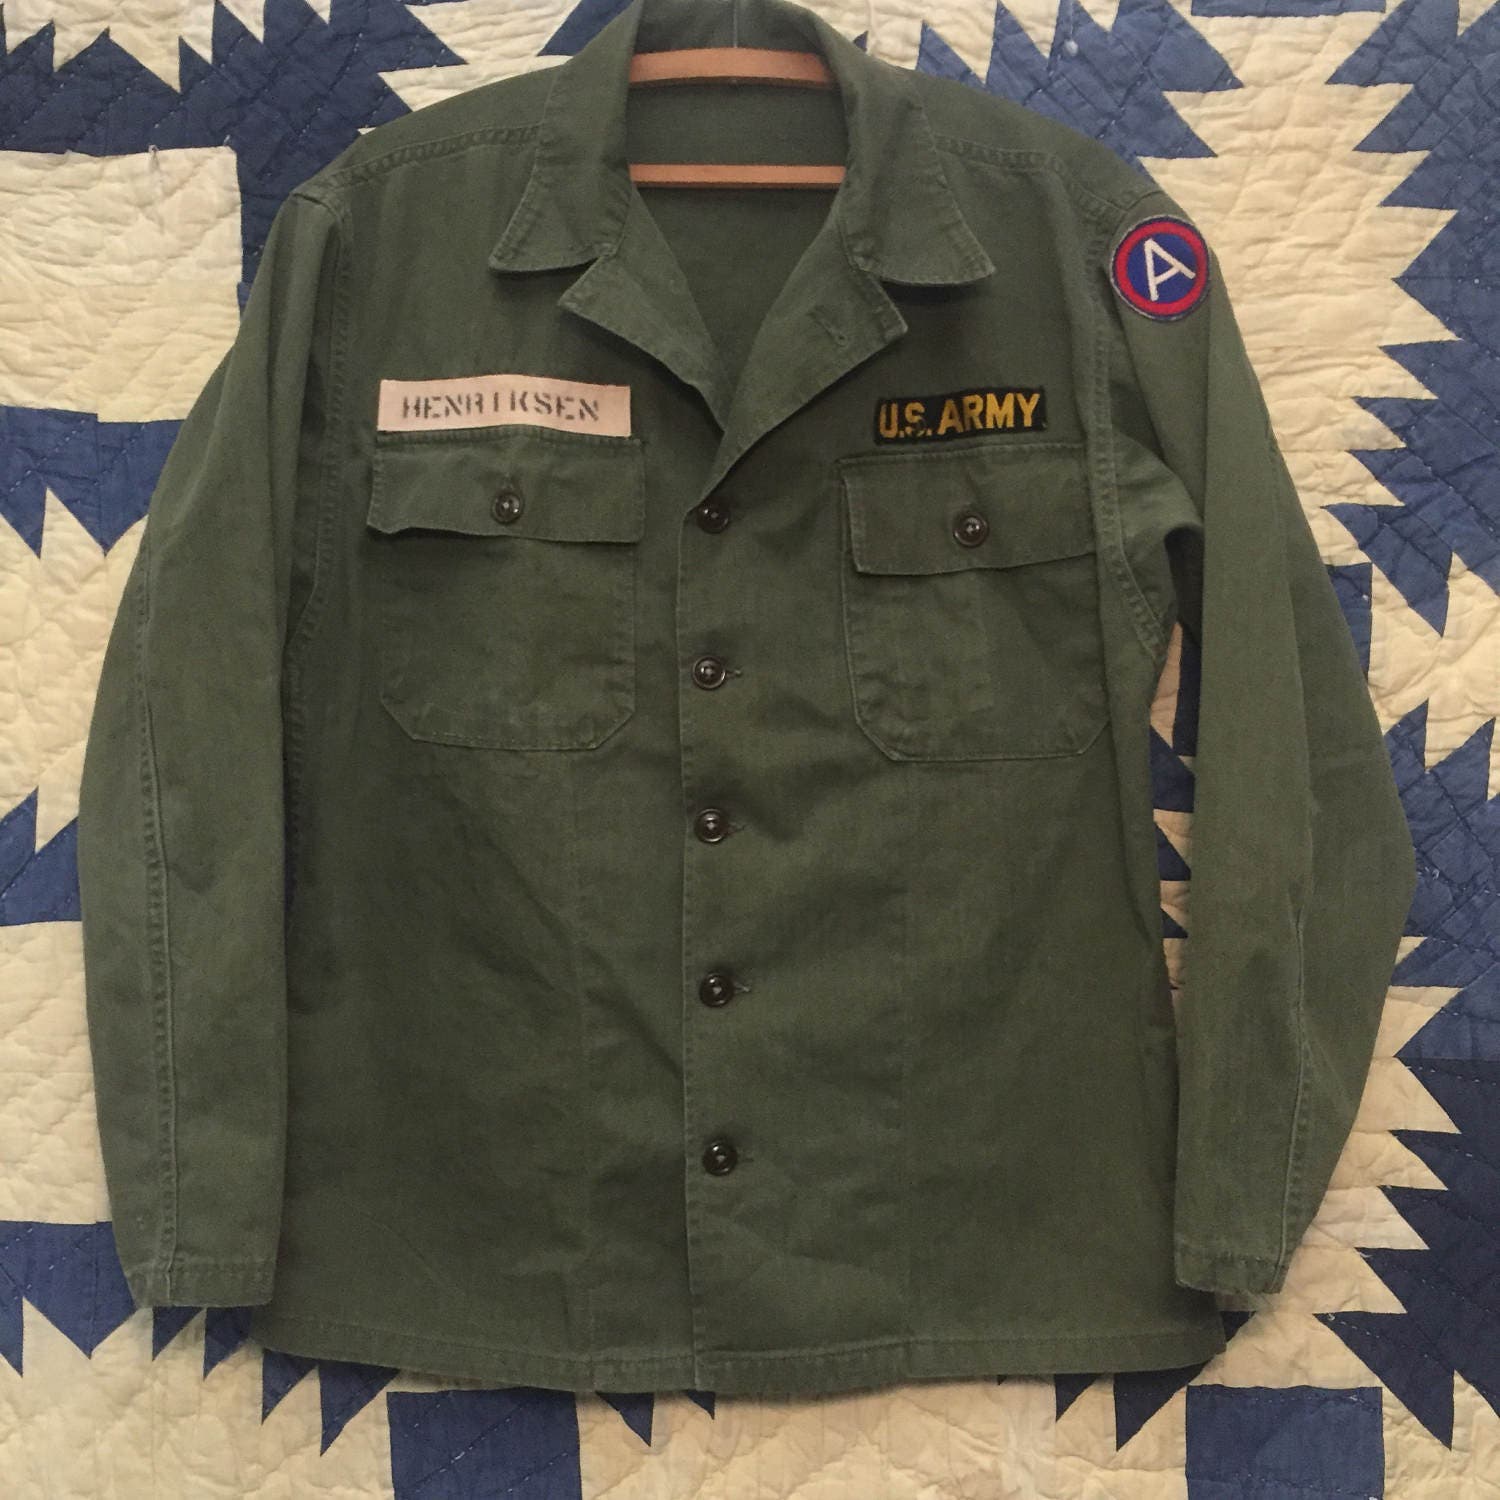 Vintage 1950s US Army HBT fatigue Shirt Mens Size S/M Korean